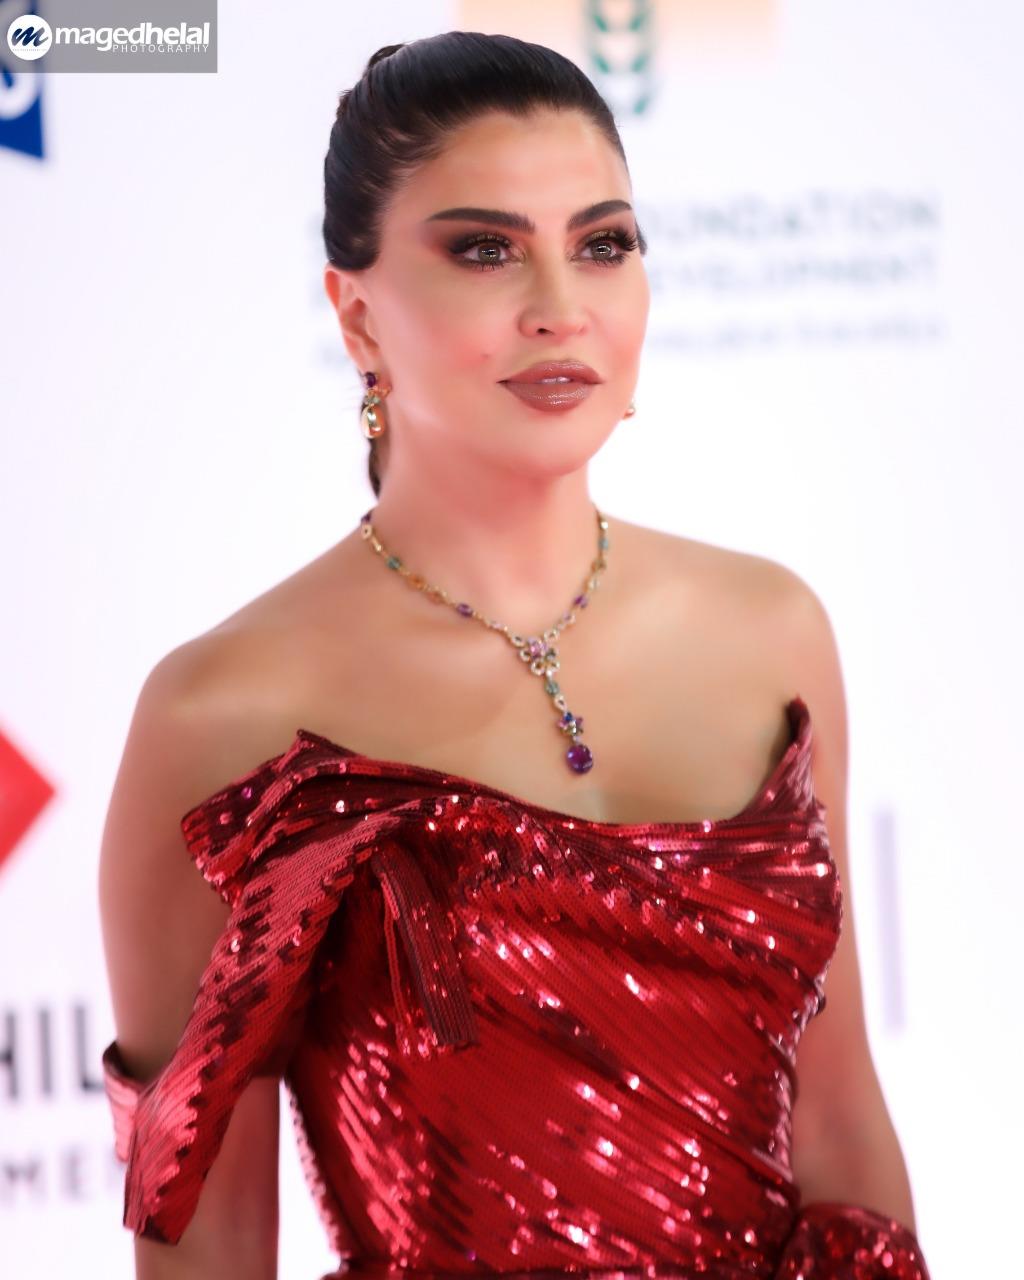 جومانا مراد تتحدى كورونا بالأحمر في افتتاح القاهرة السينمائي